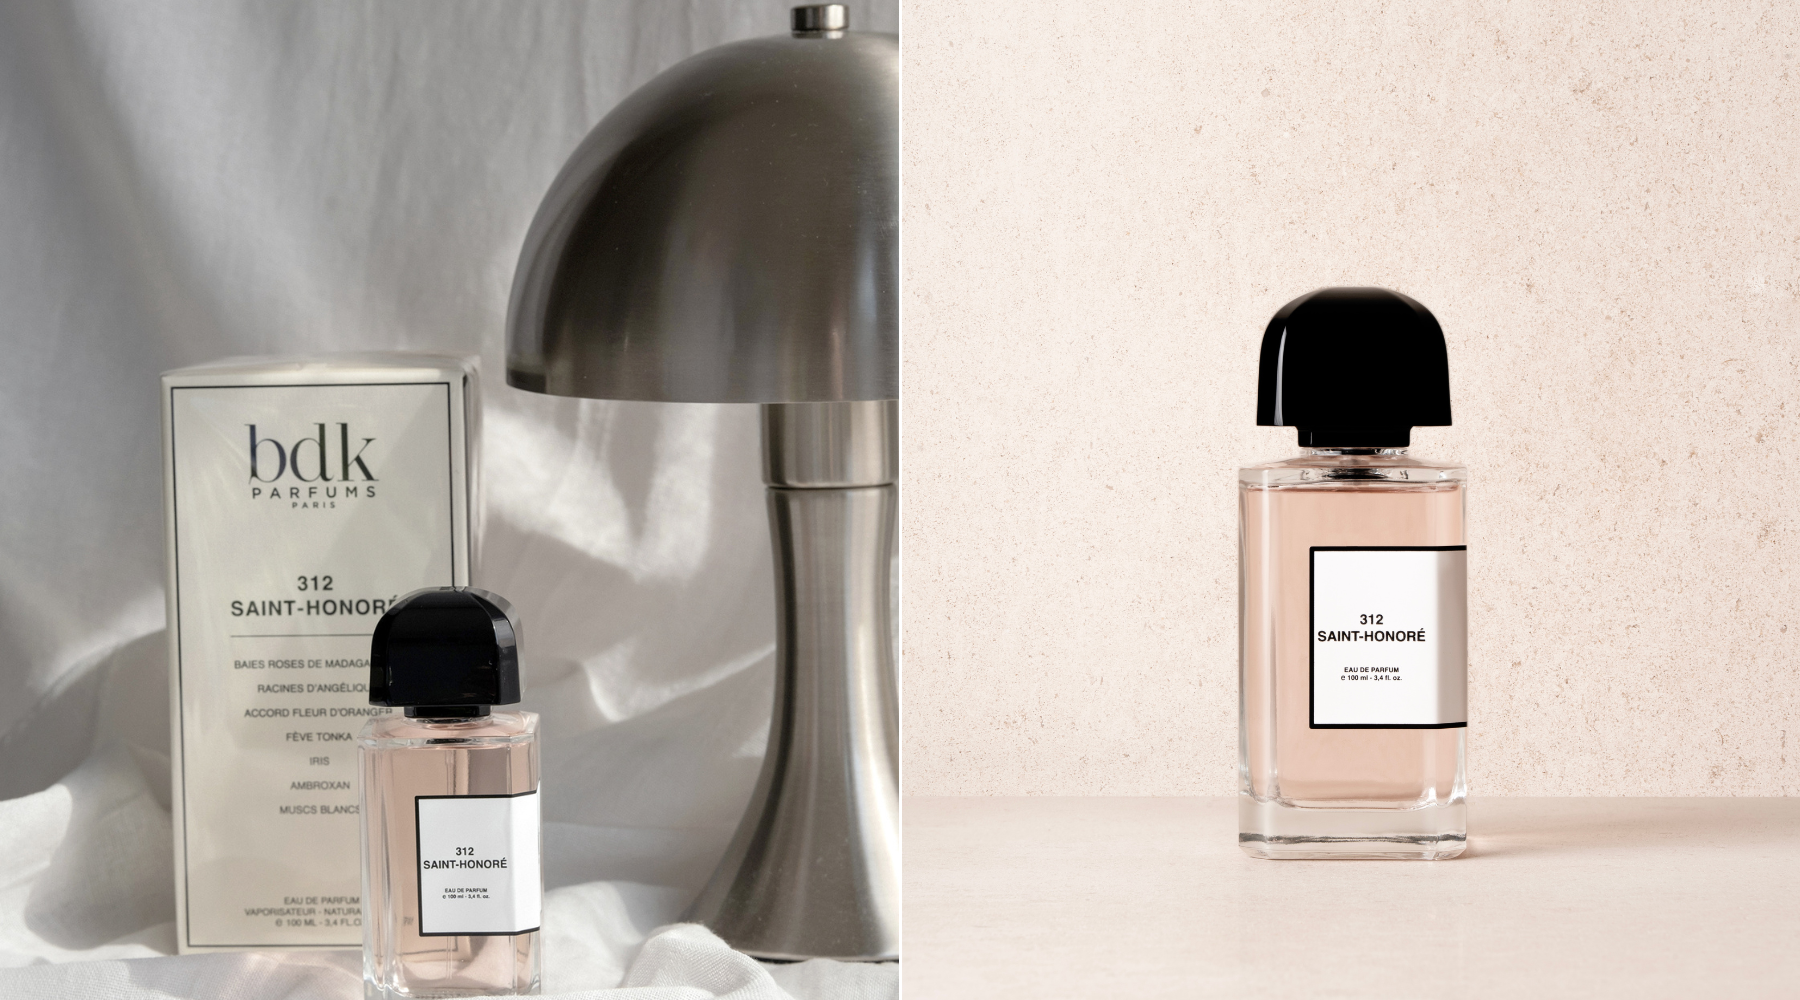 312 Saint-Honoré je must-have mirisna nota koju ovog leta dodajemo na policu sa parfemima